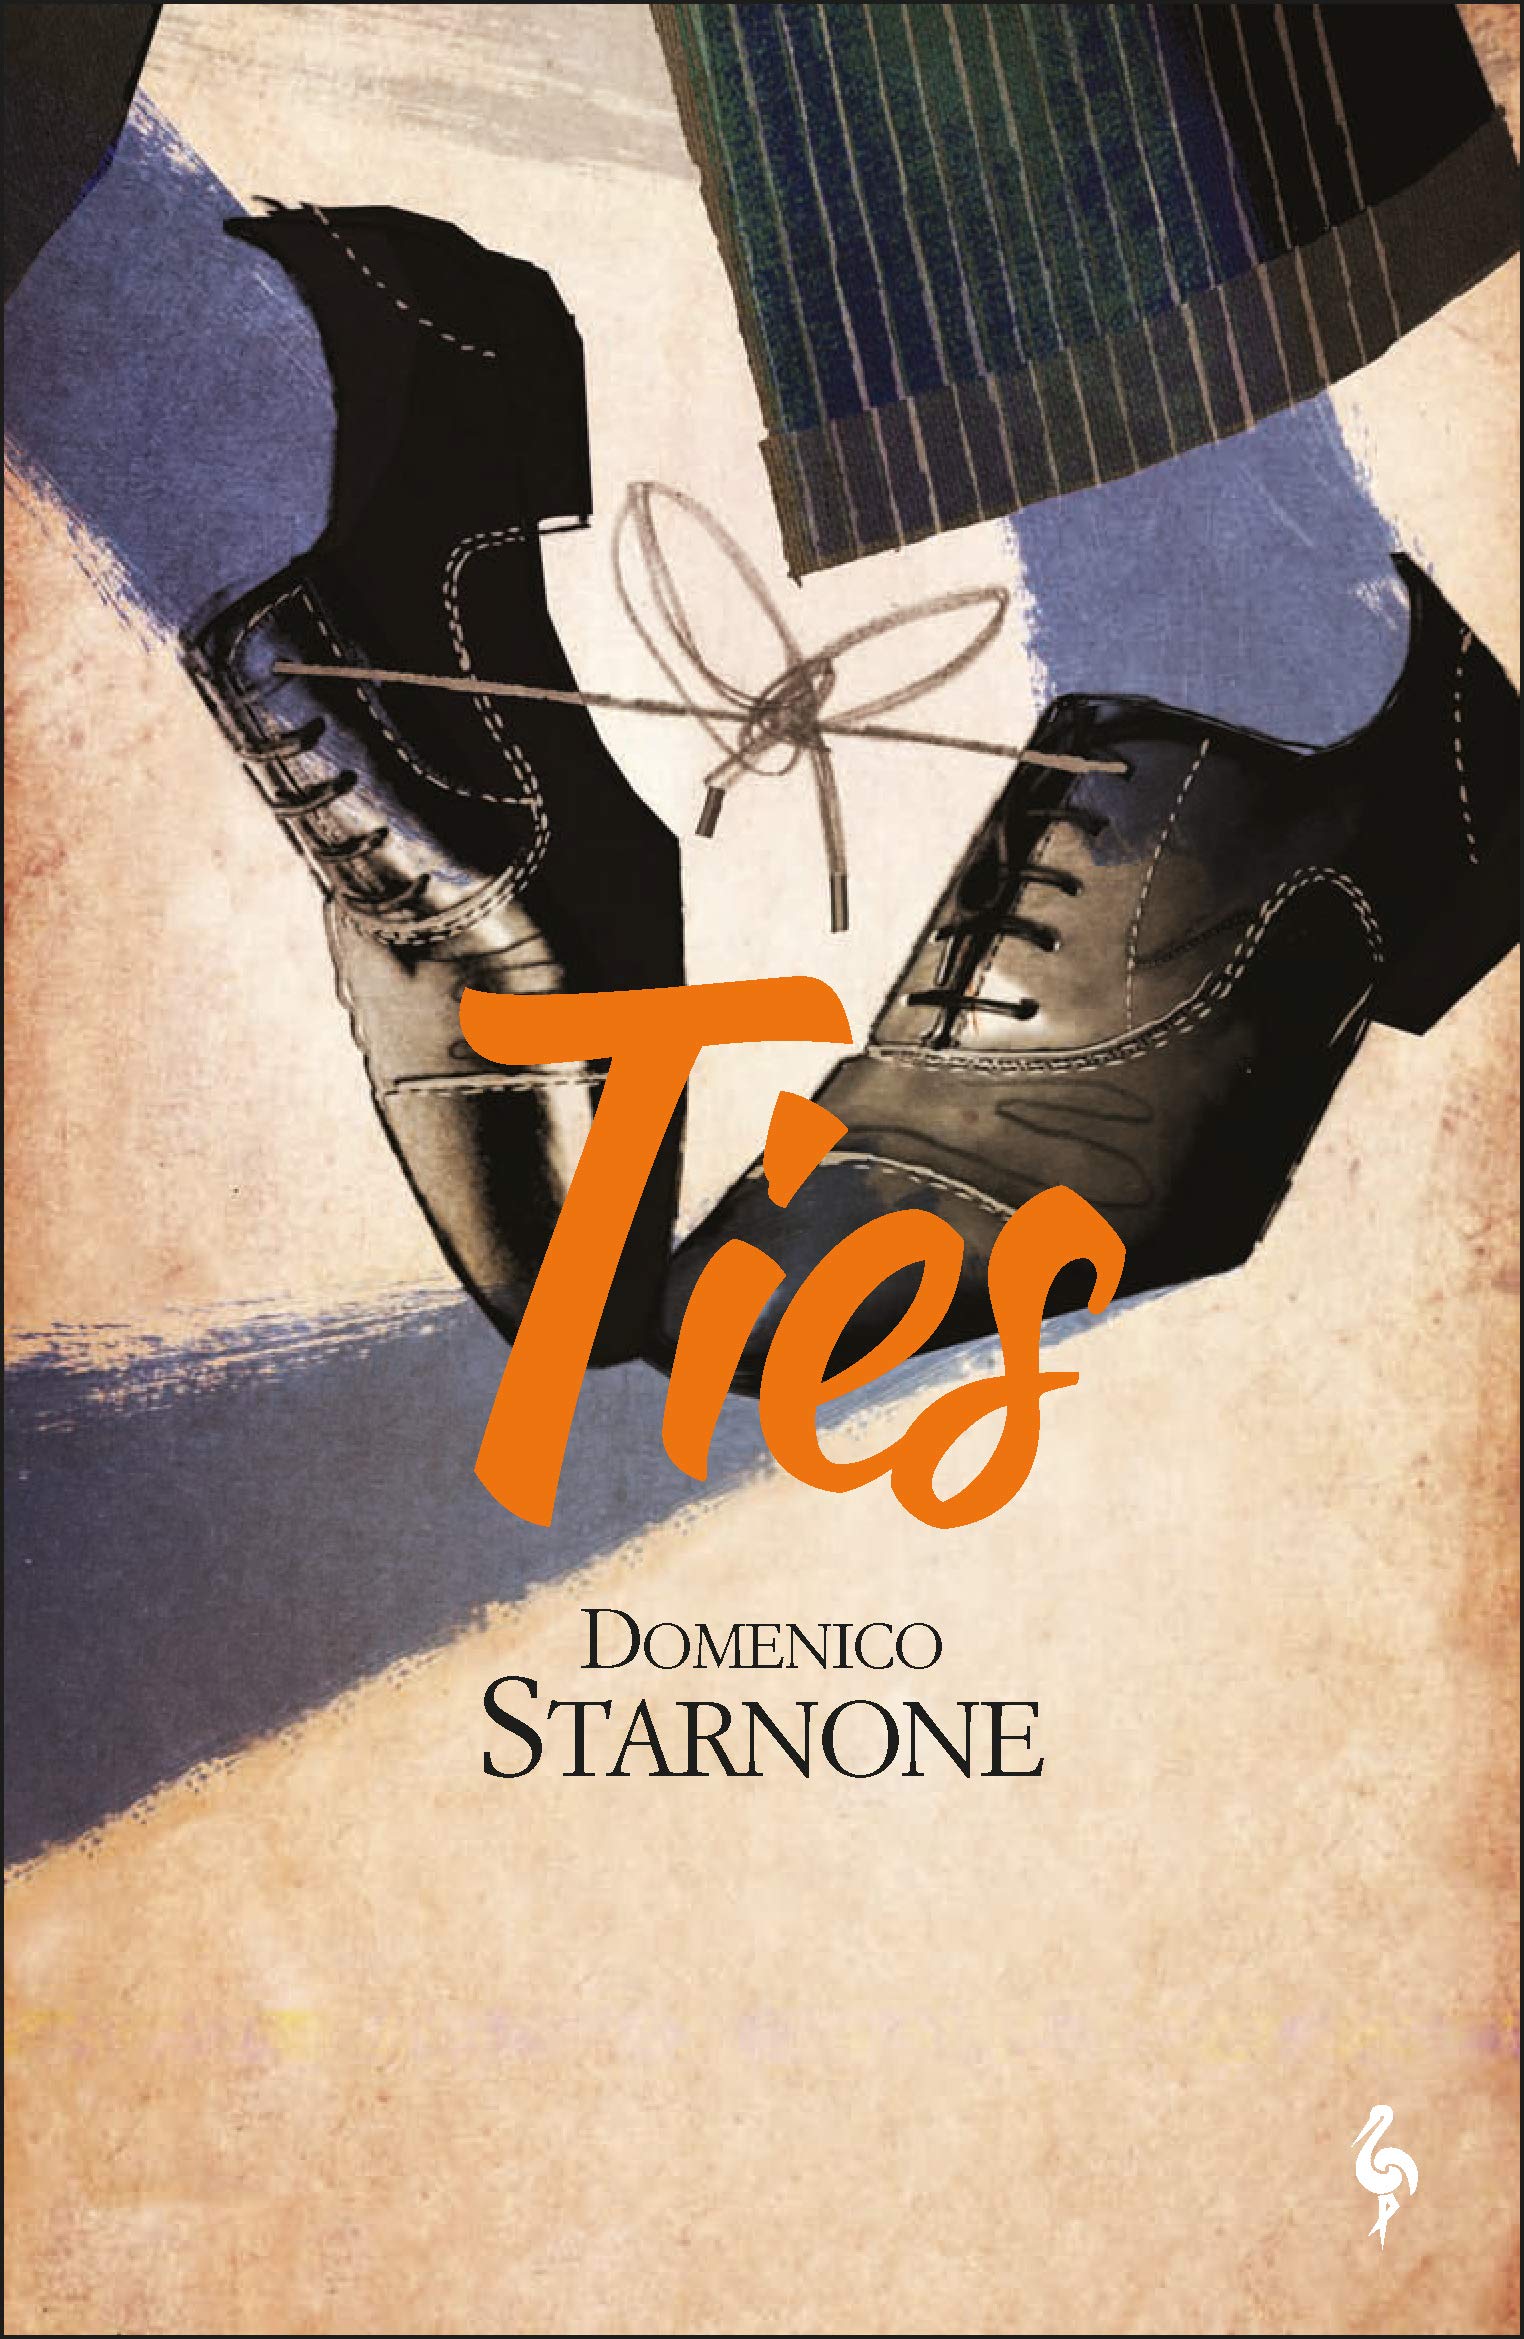 Domenico Starnone: Ties (2017, Europa Editions, Incorporated)